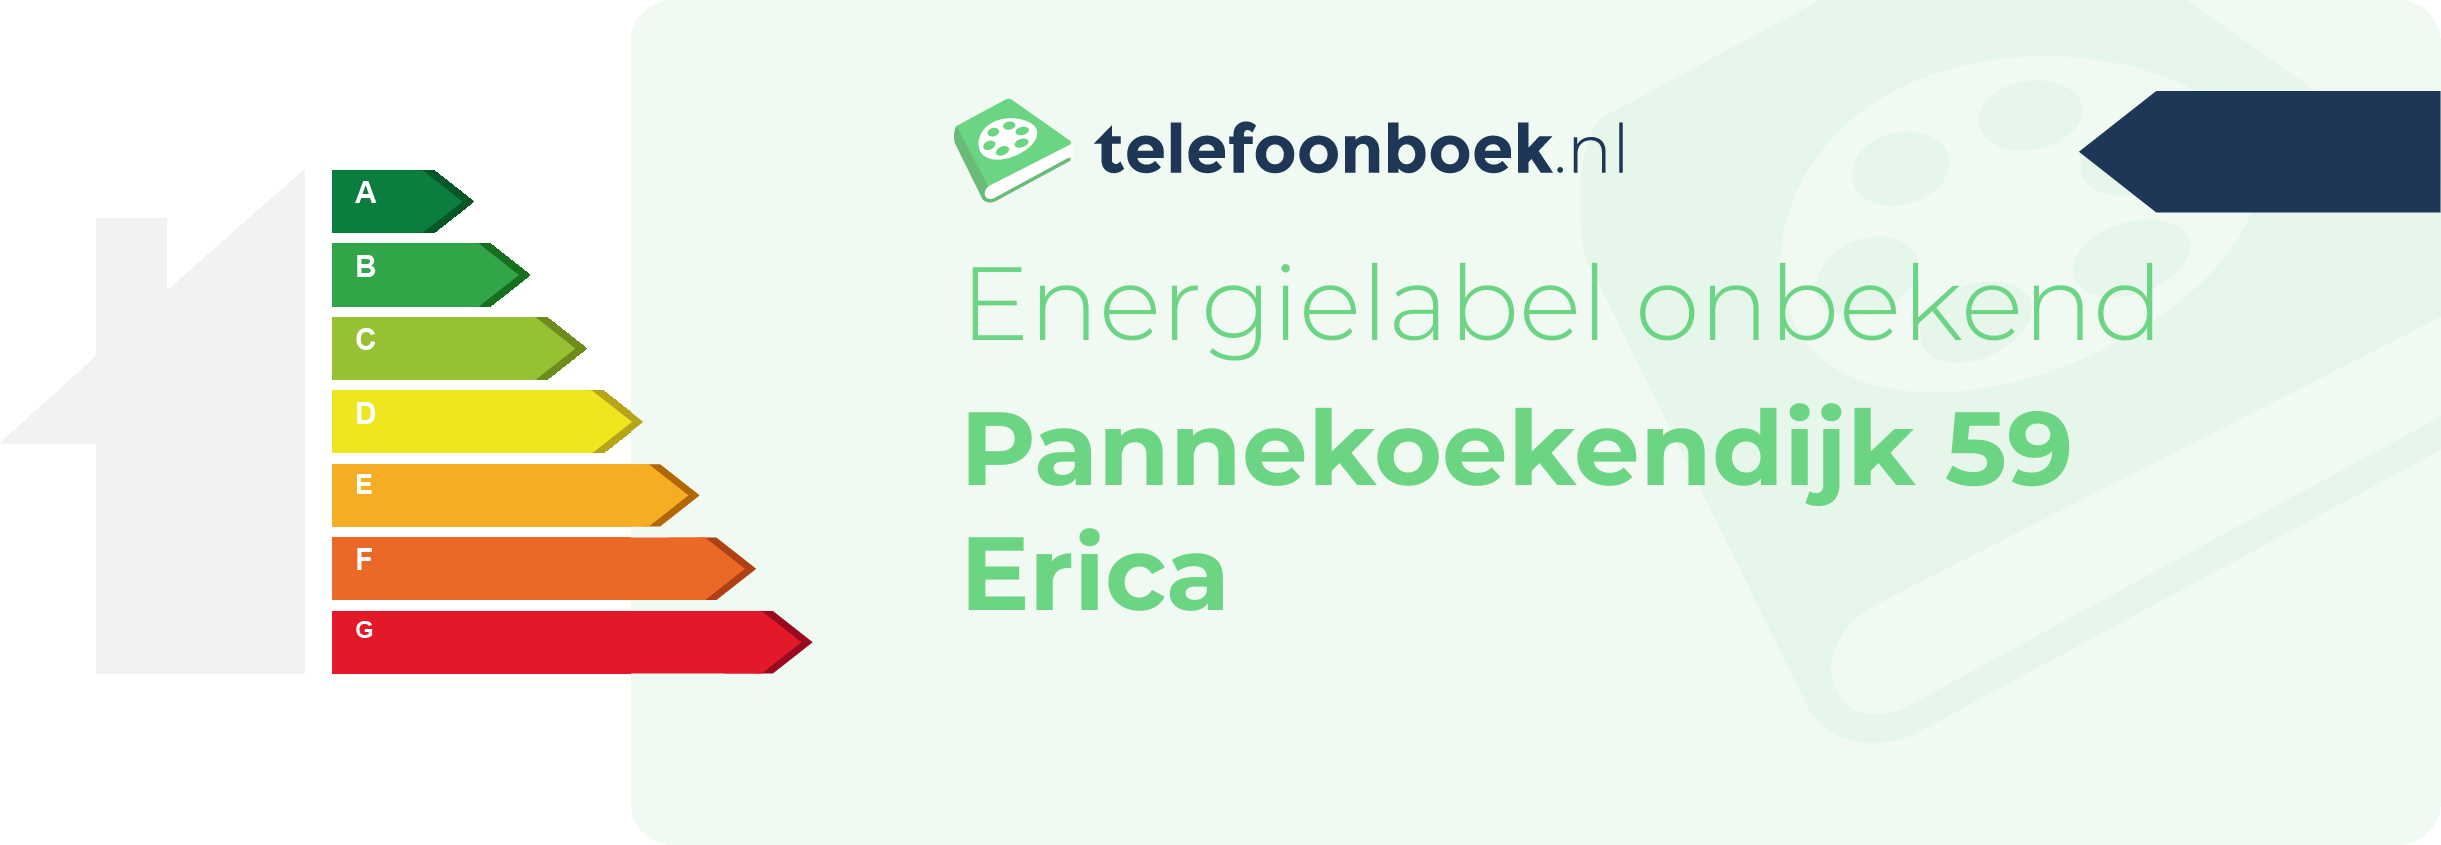 Energielabel Pannekoekendijk 59 Erica